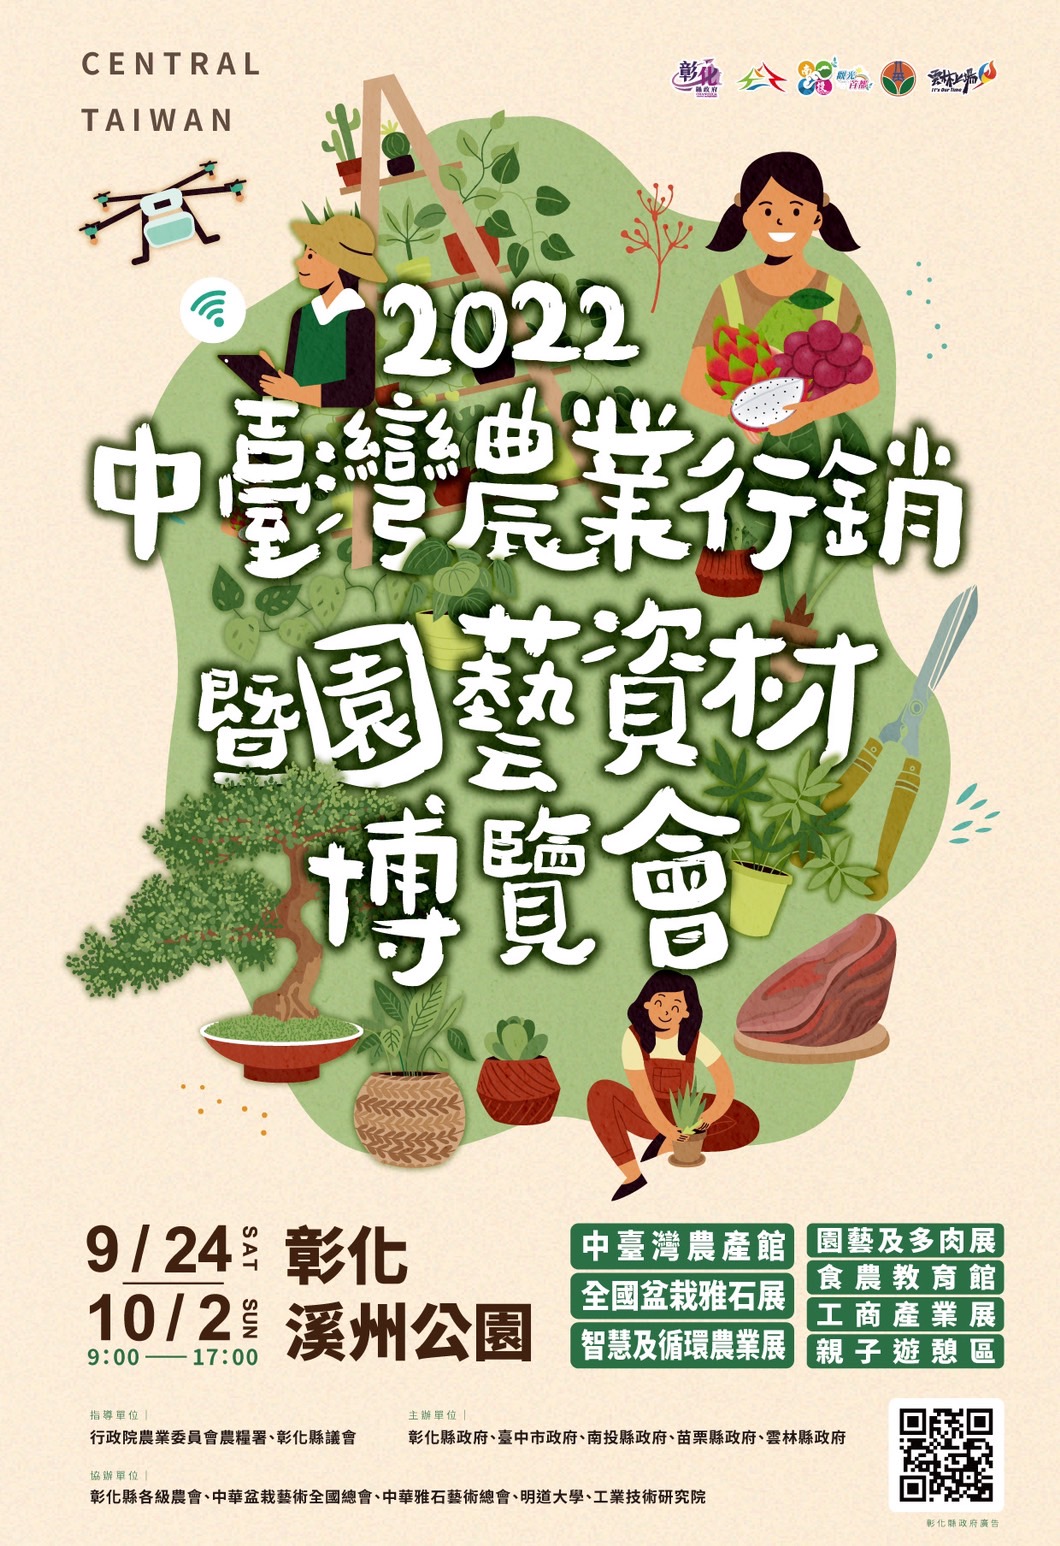 【彰化】 2022中臺灣農業行銷暨園藝資材博覽會｜溪州公園內 即日起到10/2號的七大主題展區，搭配親子遊戲區、街頭藝人、美食區、動物認養及多樣舞台展演節目等，通通讓你玩免費。